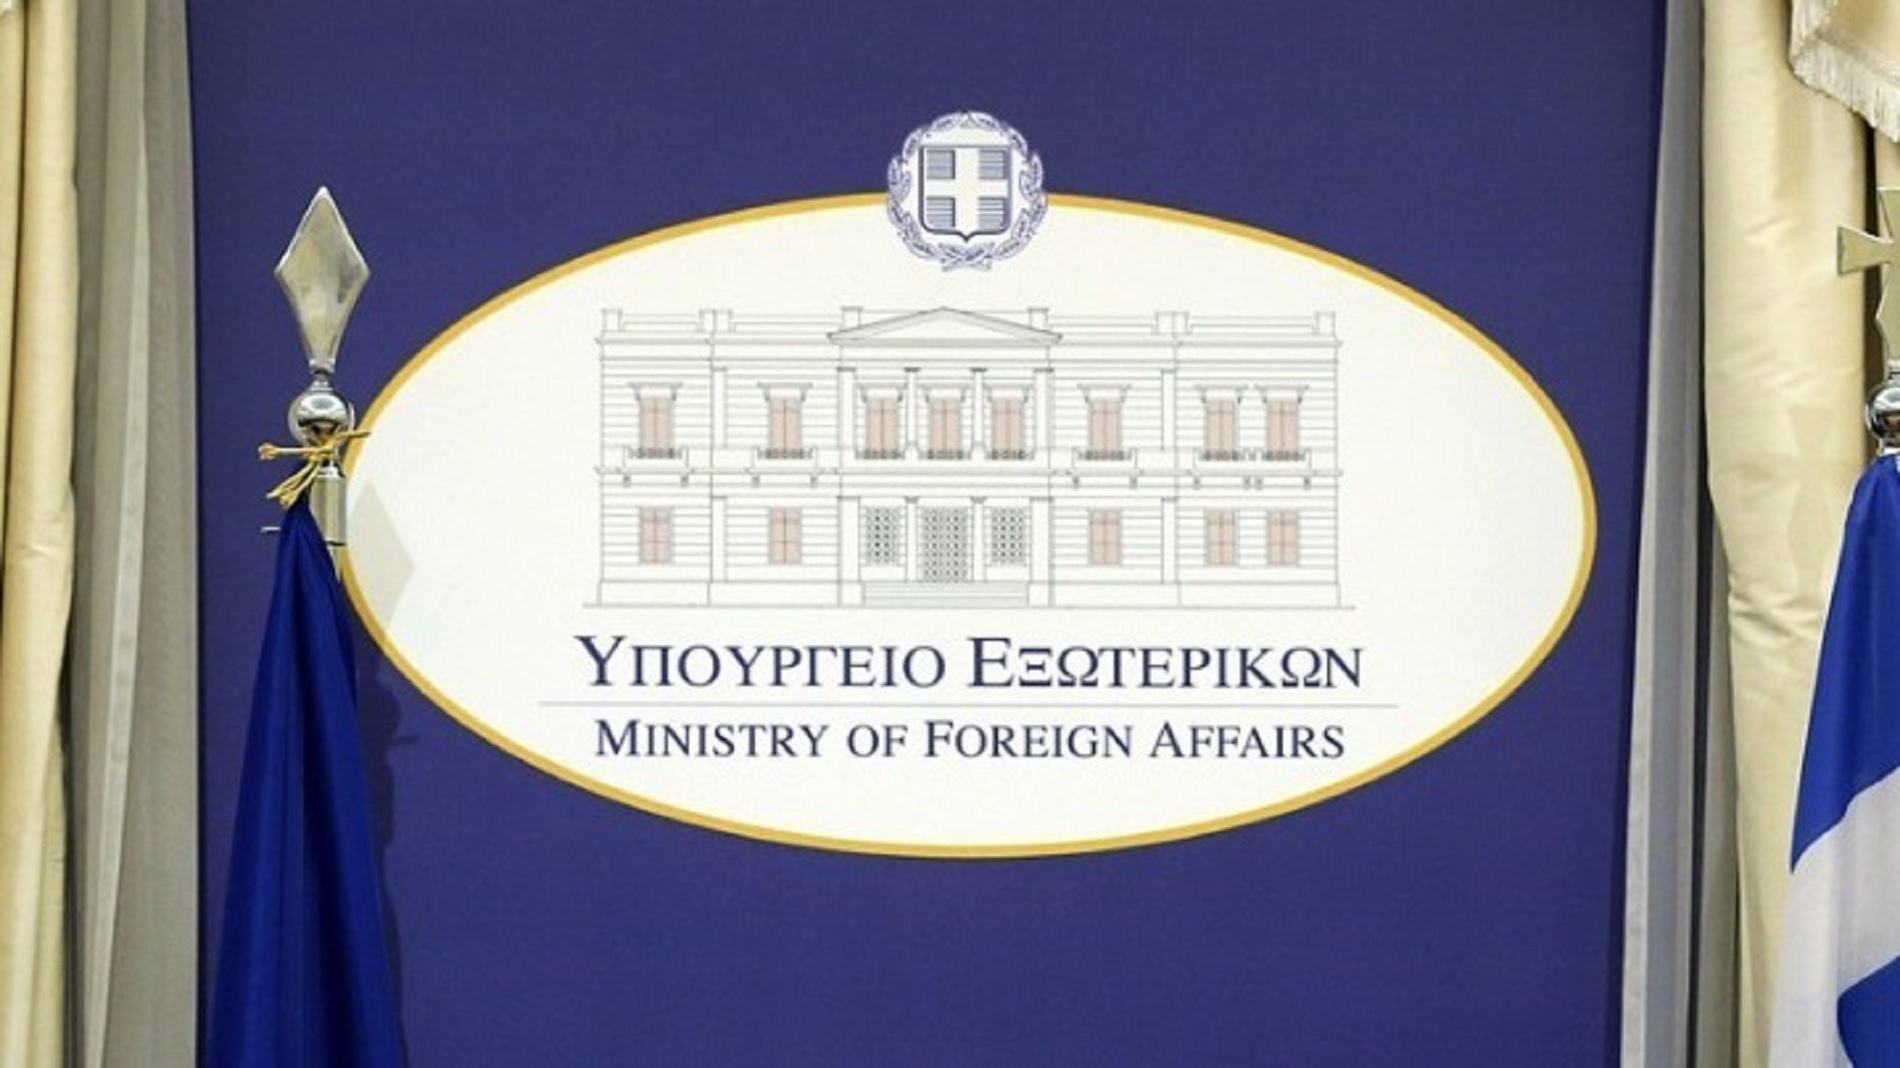 ΥΠΕΞ: Ενεργοποιεί τη Μονάδα Διαχείριση Κρίσεων – Τα στοιχεία επικοινωνίας για Έλληνες πολίτες και ομογενείς στην Ουκρανία